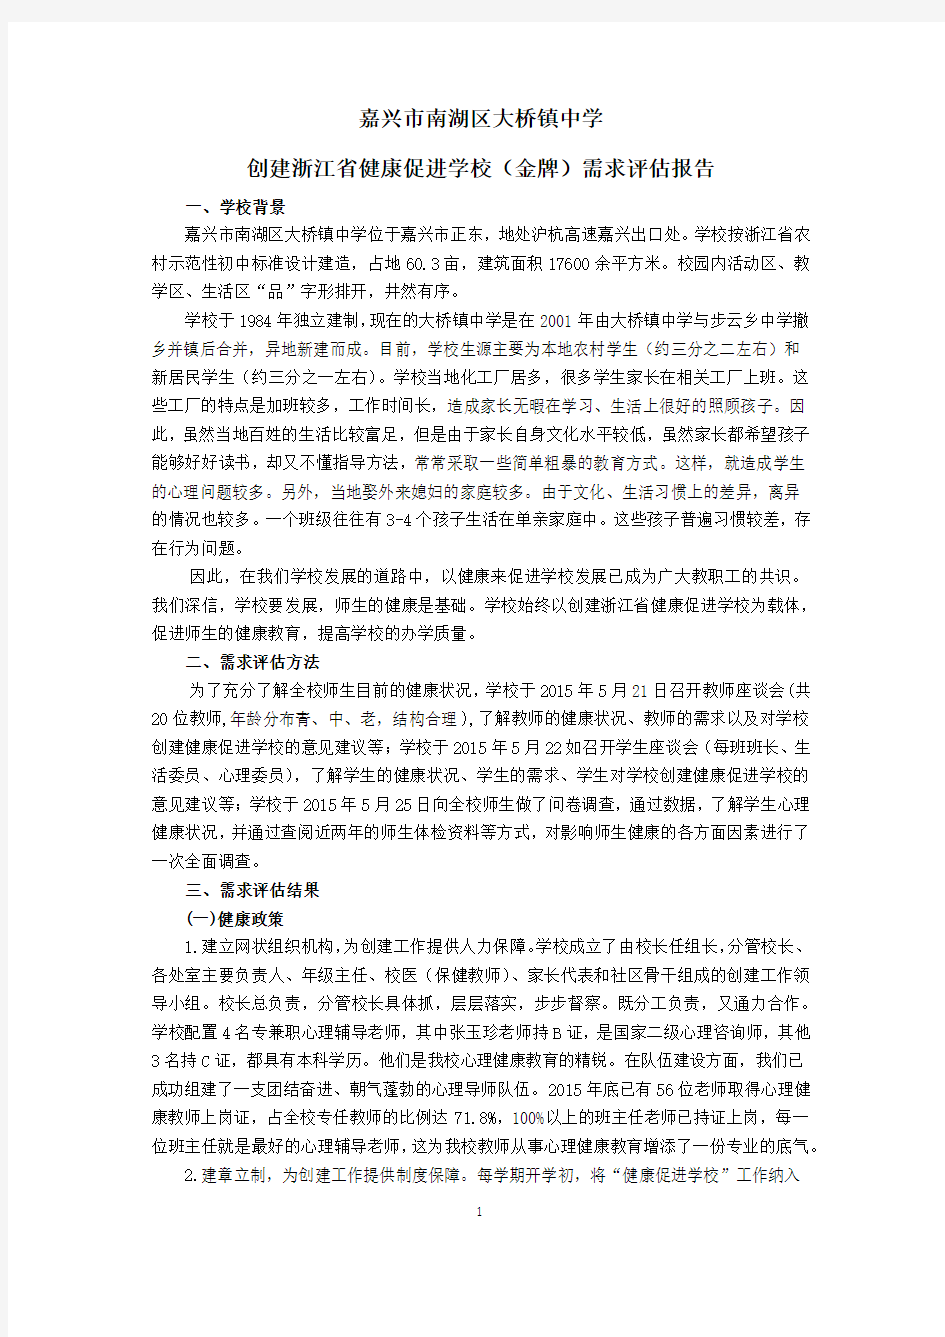 创建浙江省健康促进学校(金牌)需求评估报告